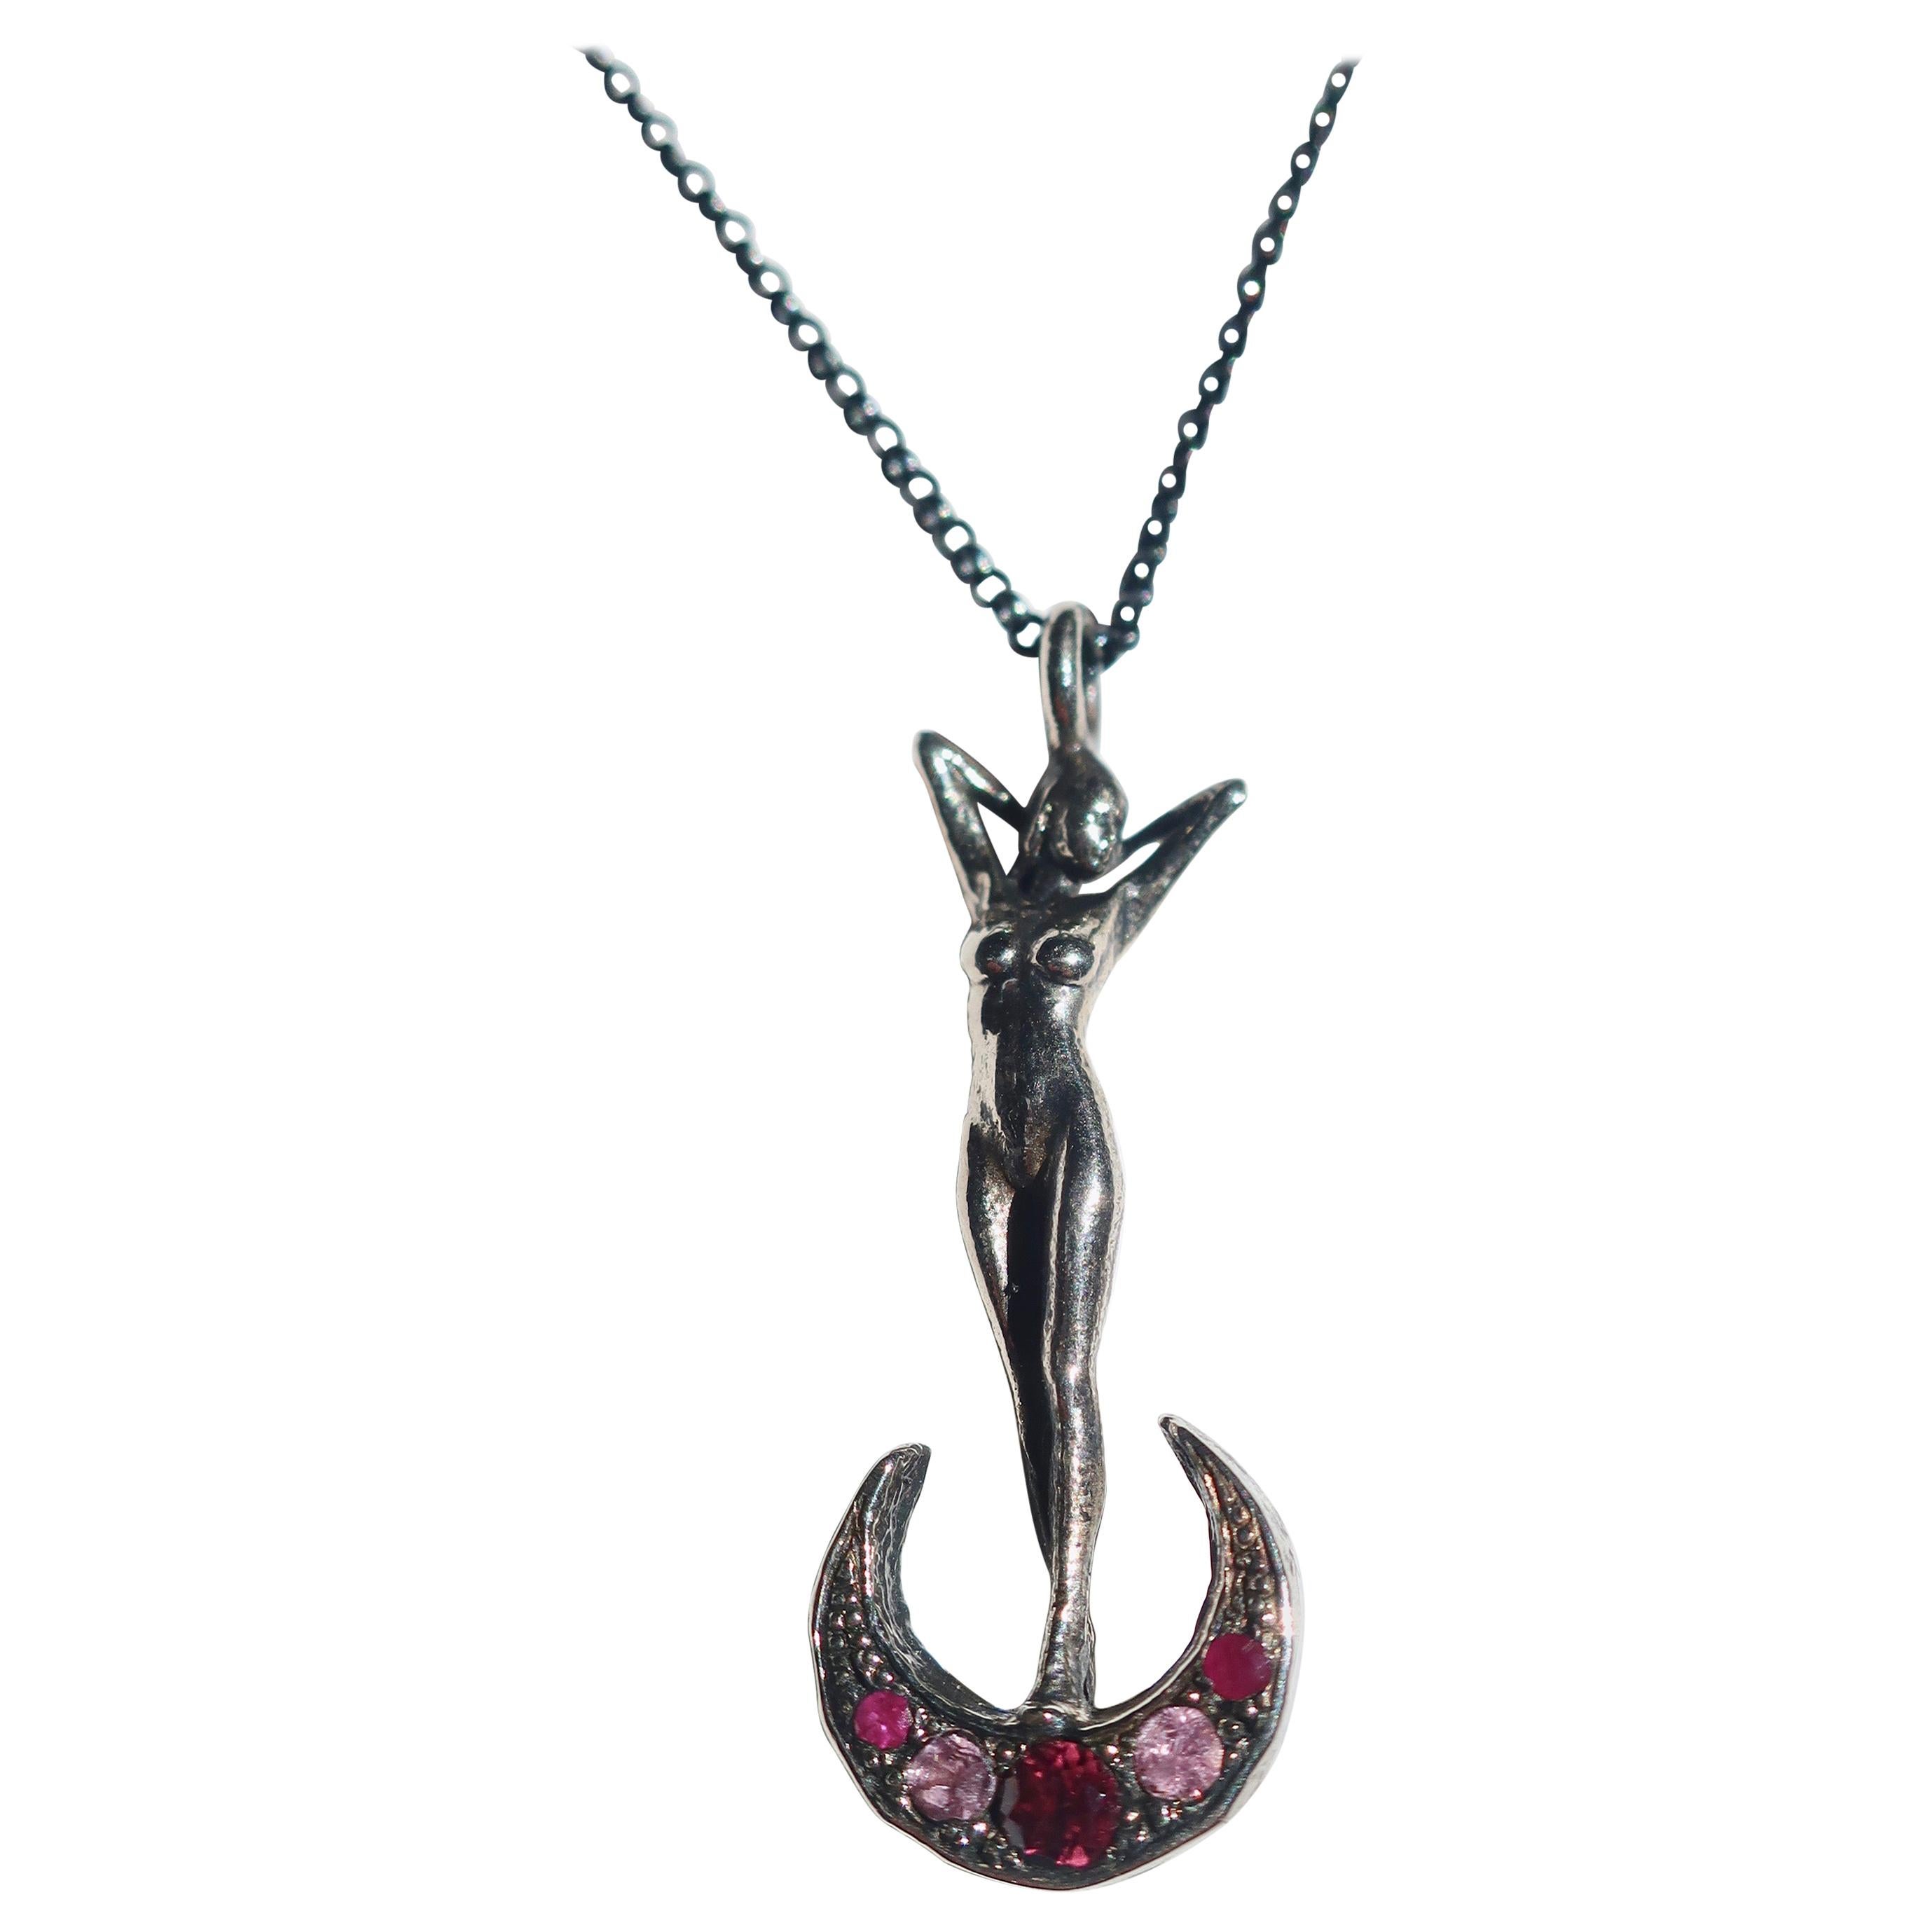 Art Nouveau Woman and Crescent Moon Necklace